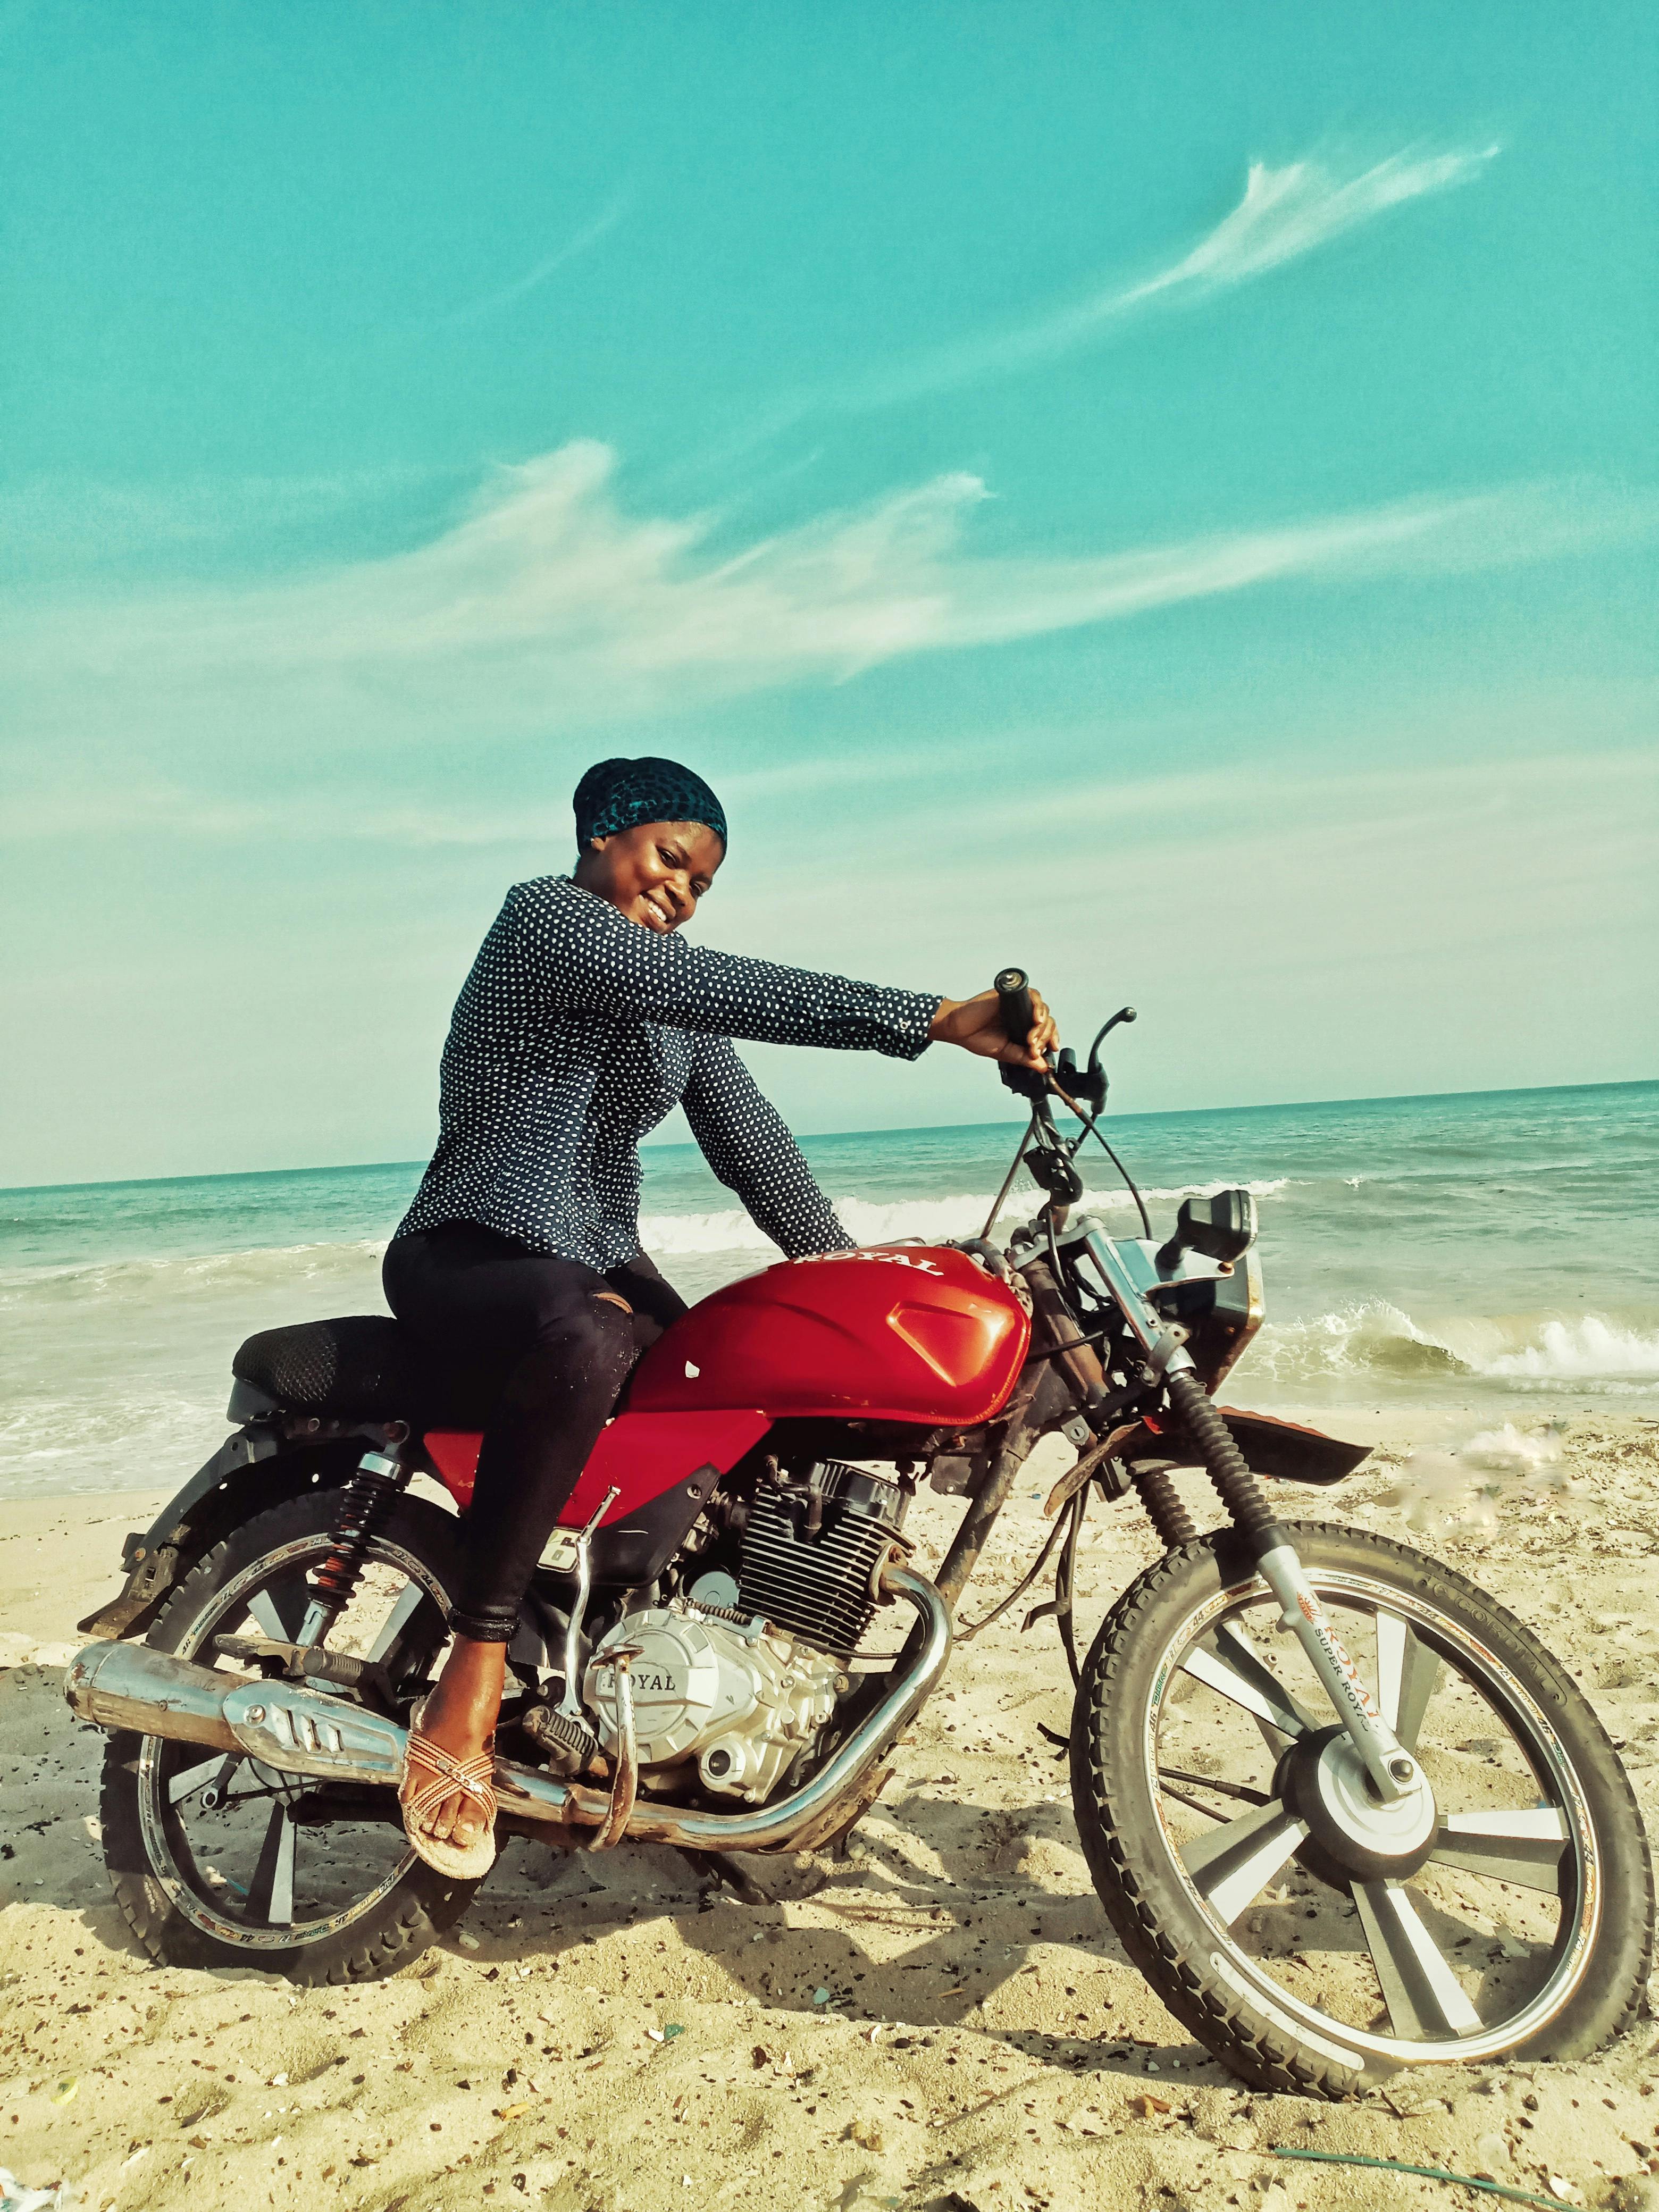 A Beautiful Woman Sitting on a Dirt Bike · Free Stock Photo